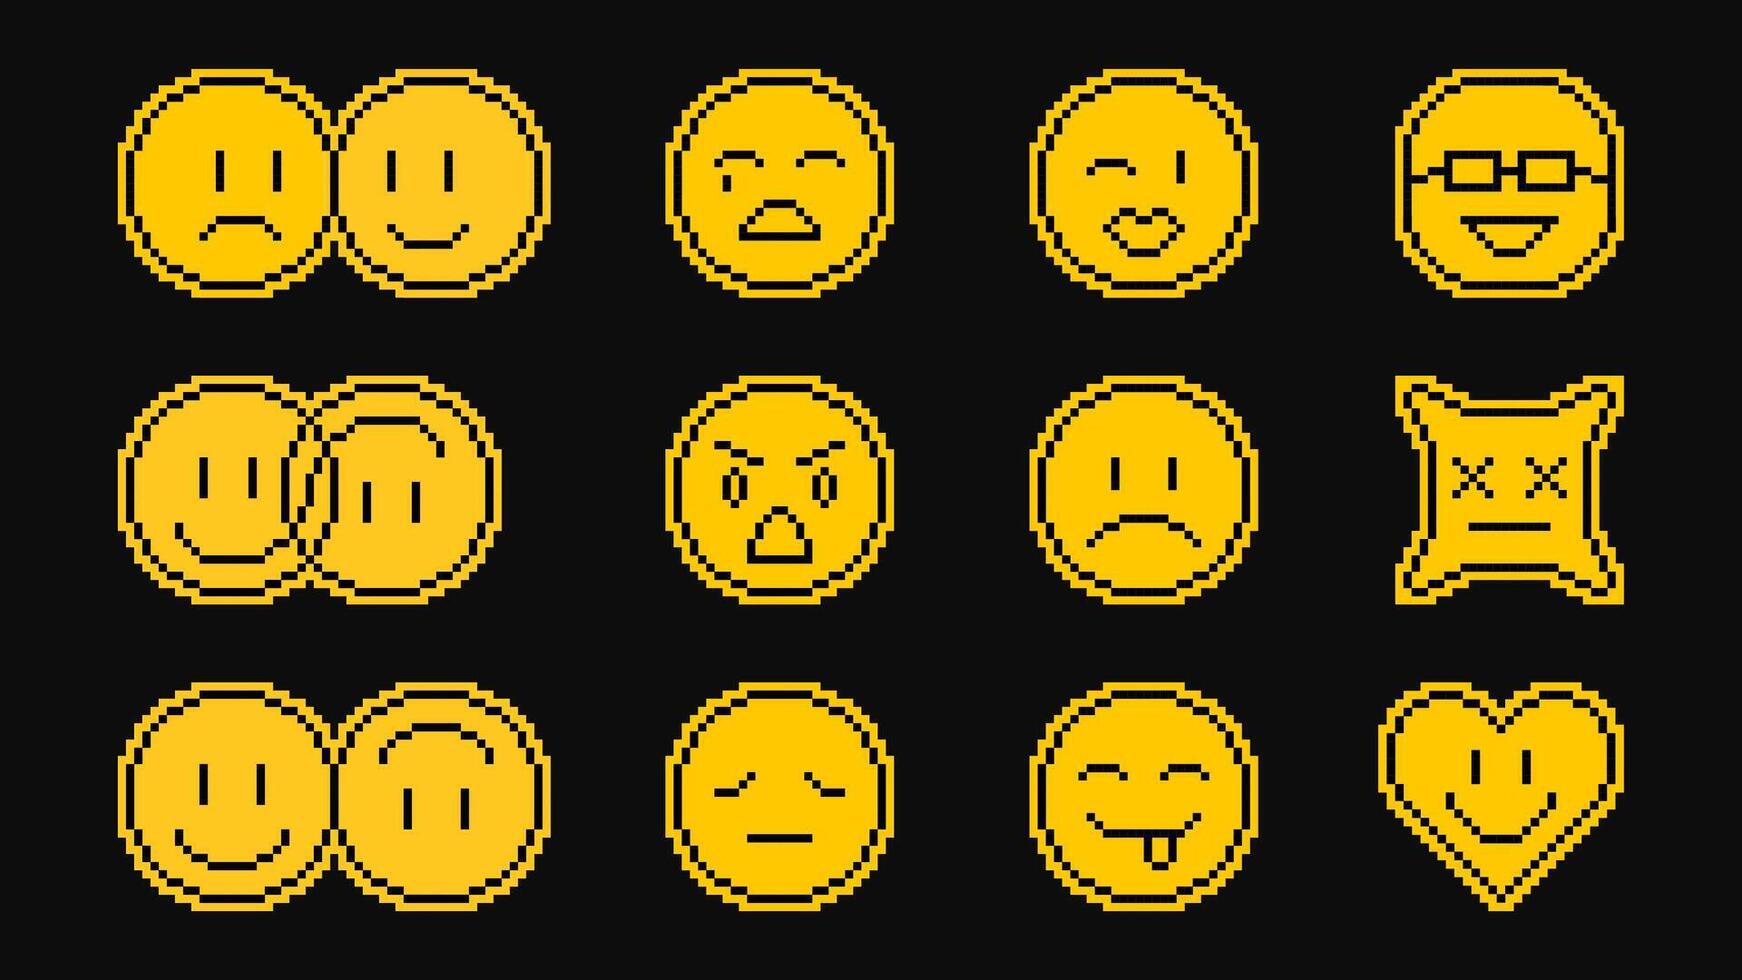 píxel emoji sonrisa embalar. varios píxel Arte sonrisas con risa o amor emociones, conjunto caras, mensaje charla emoticones y expresión sonrisas, vector pegatinas 8 bits ácido estilo pixelado emoji cara